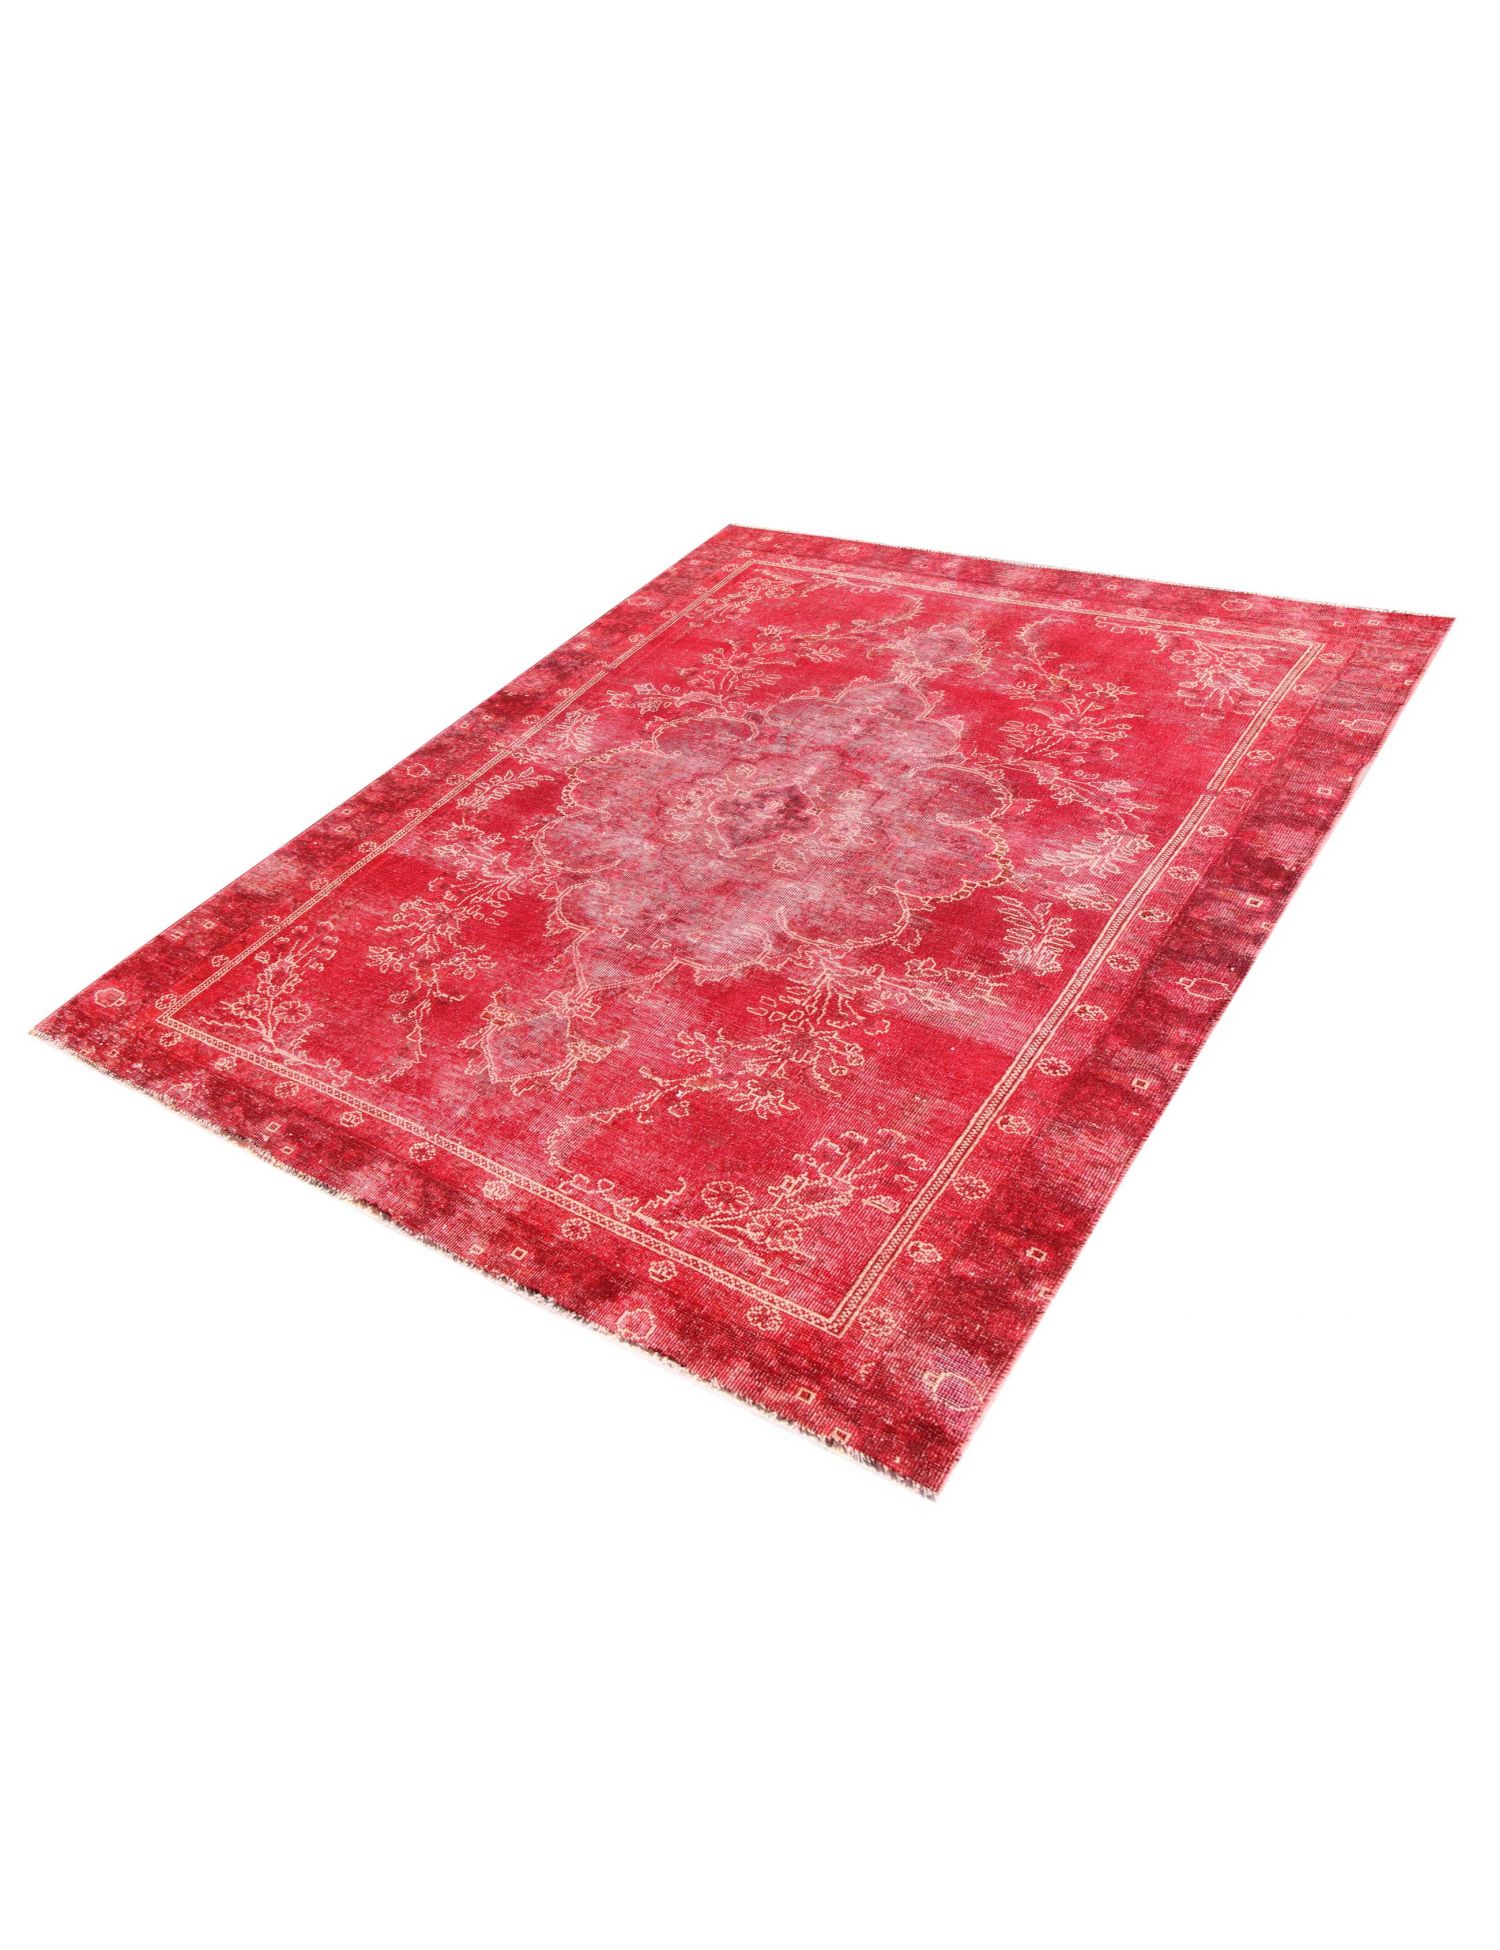 Persischer Vintage Teppich  rot <br/>275 x 170 cm